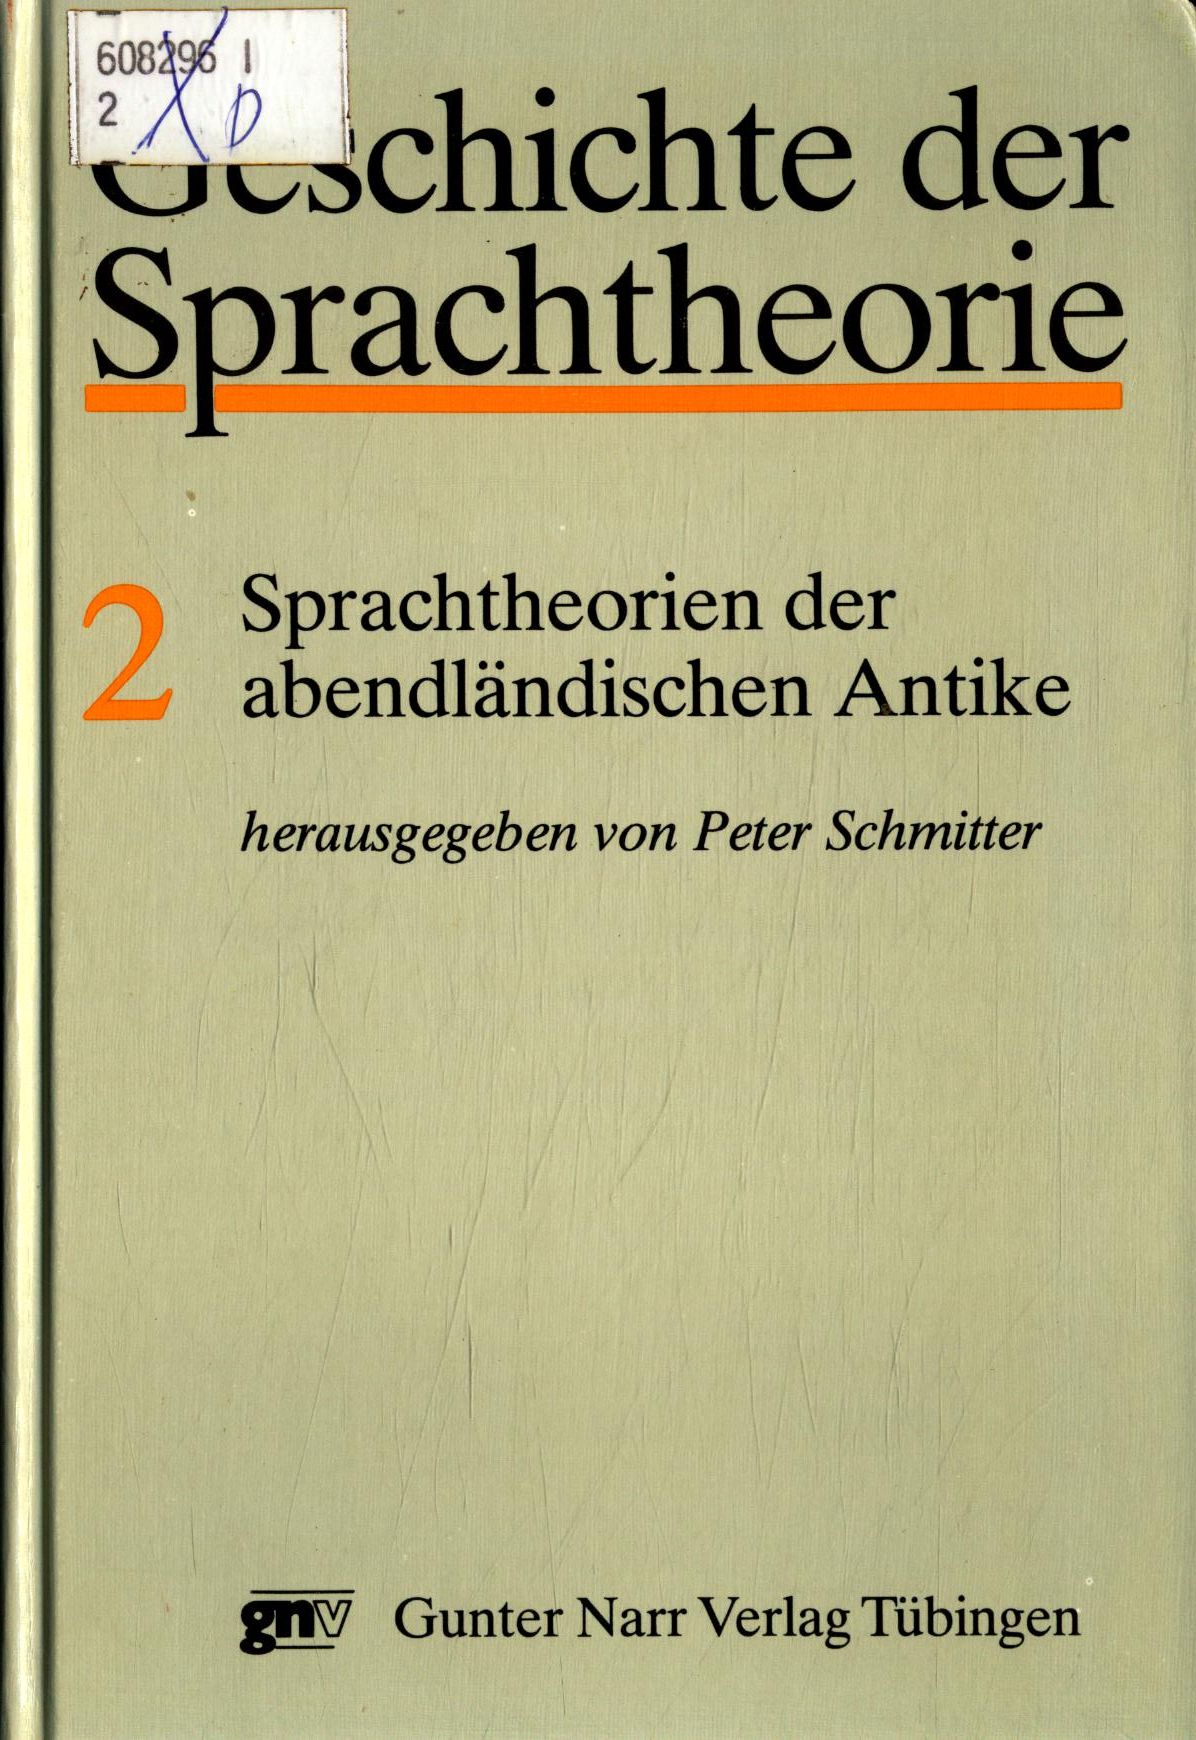 Geschichte der Sprachtheorie Band 2: Sprachtheorien der abendländischen Antike - Schmitter, Peter